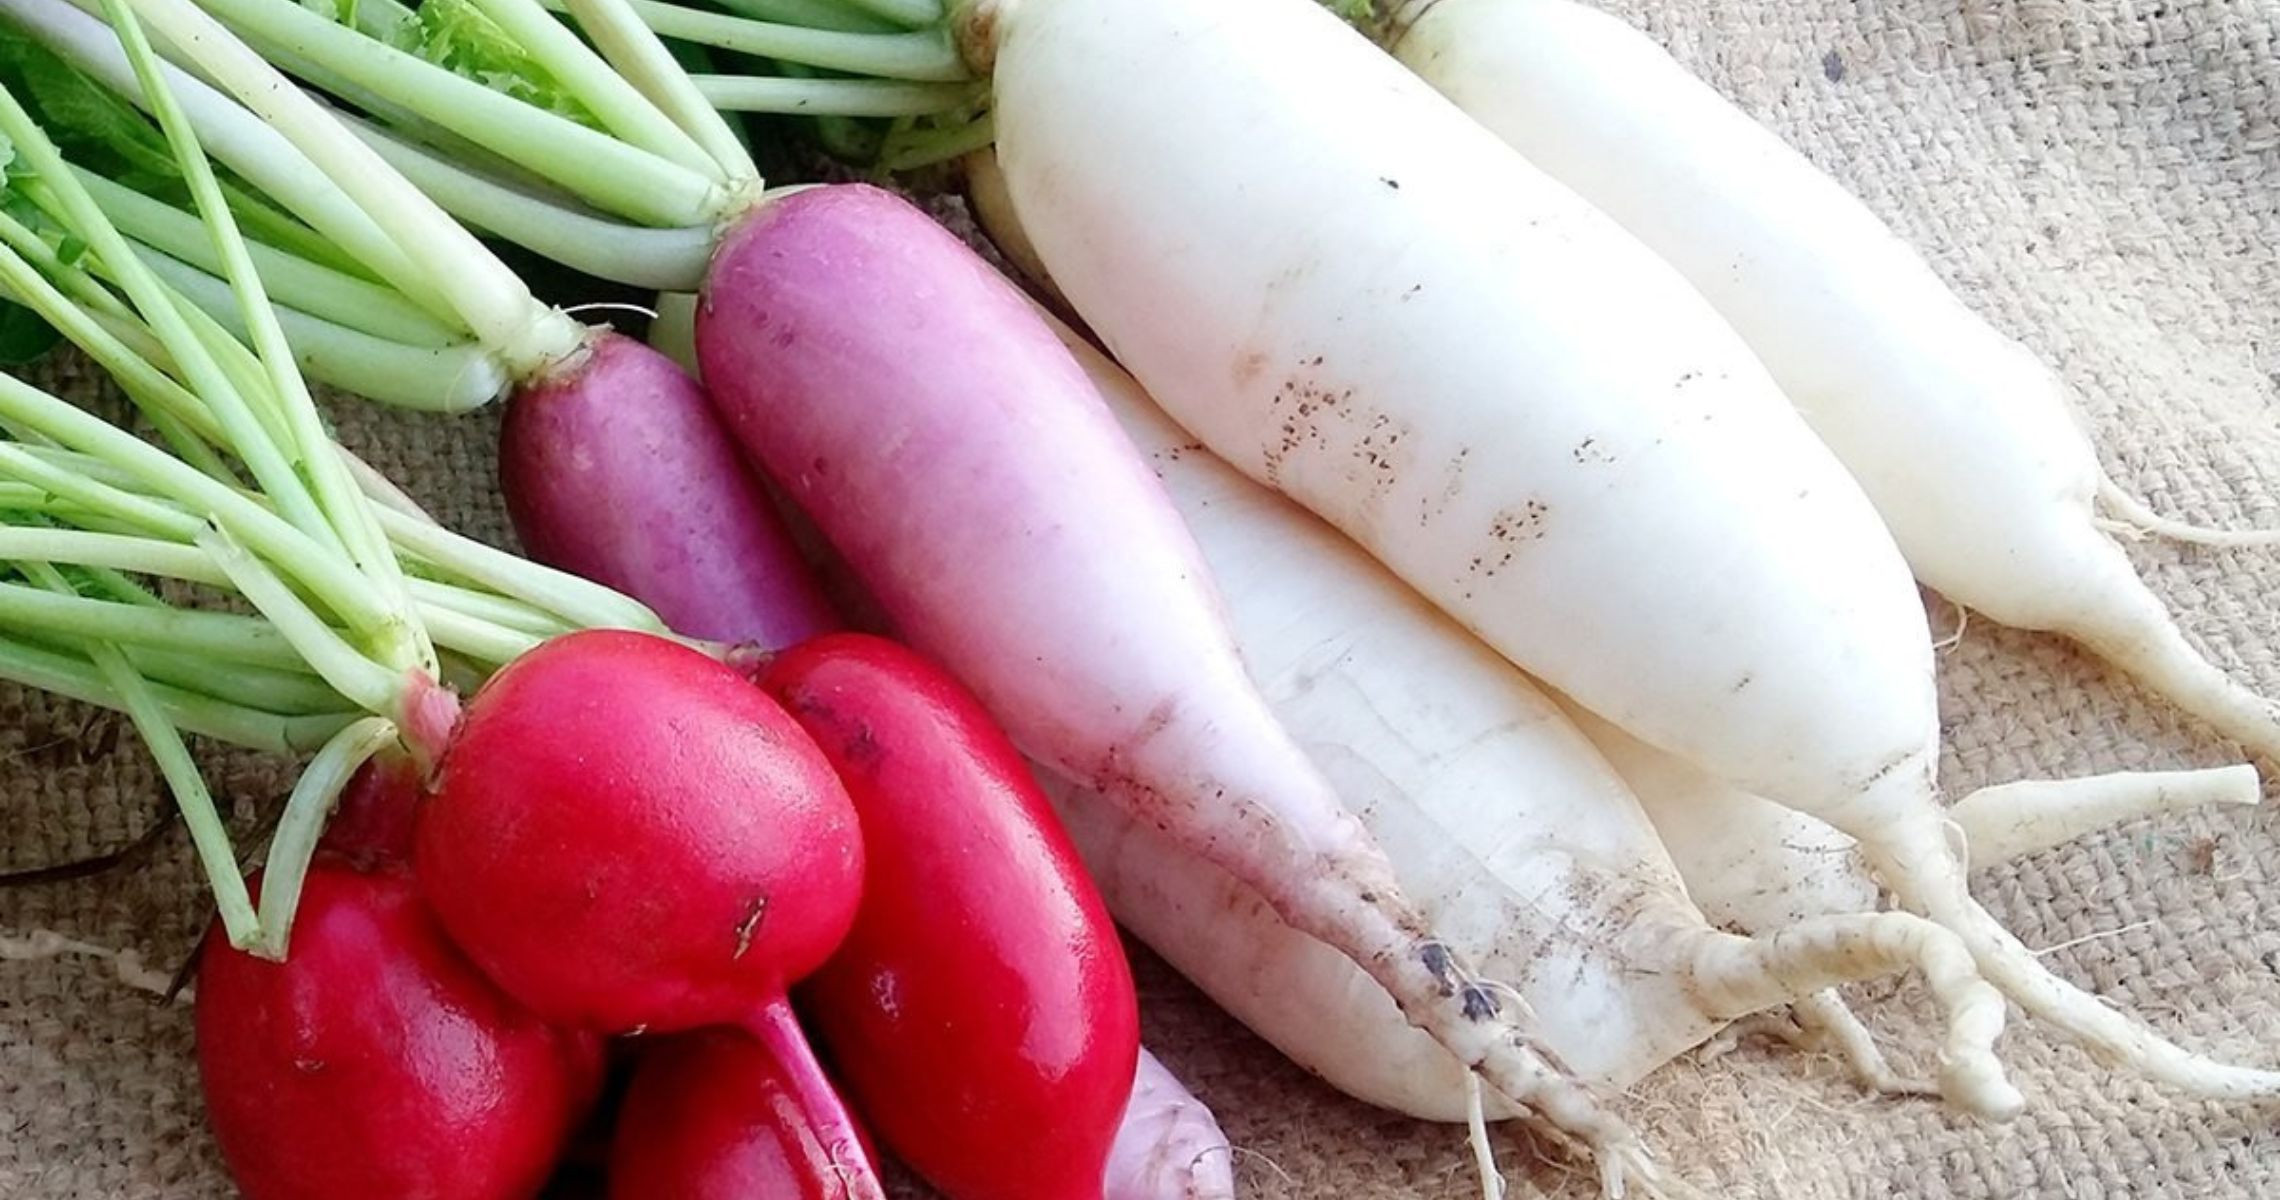 Giá trị dinh dưỡng trong củ cải trắng - ăn củ này có béo không?